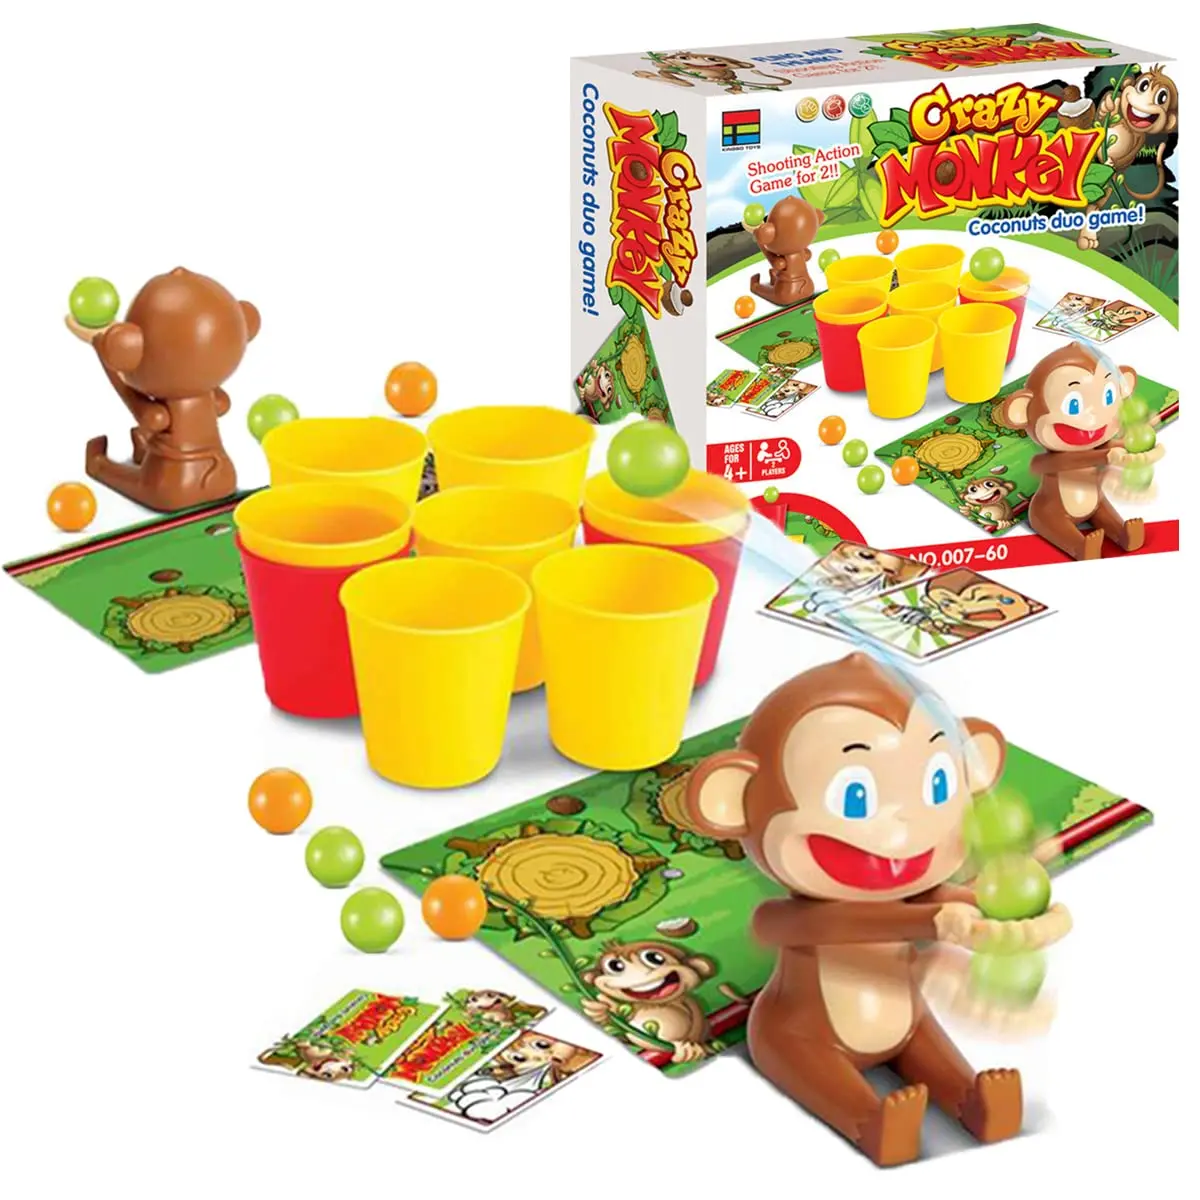 juego del mono - Cómo se juega el juego de monos